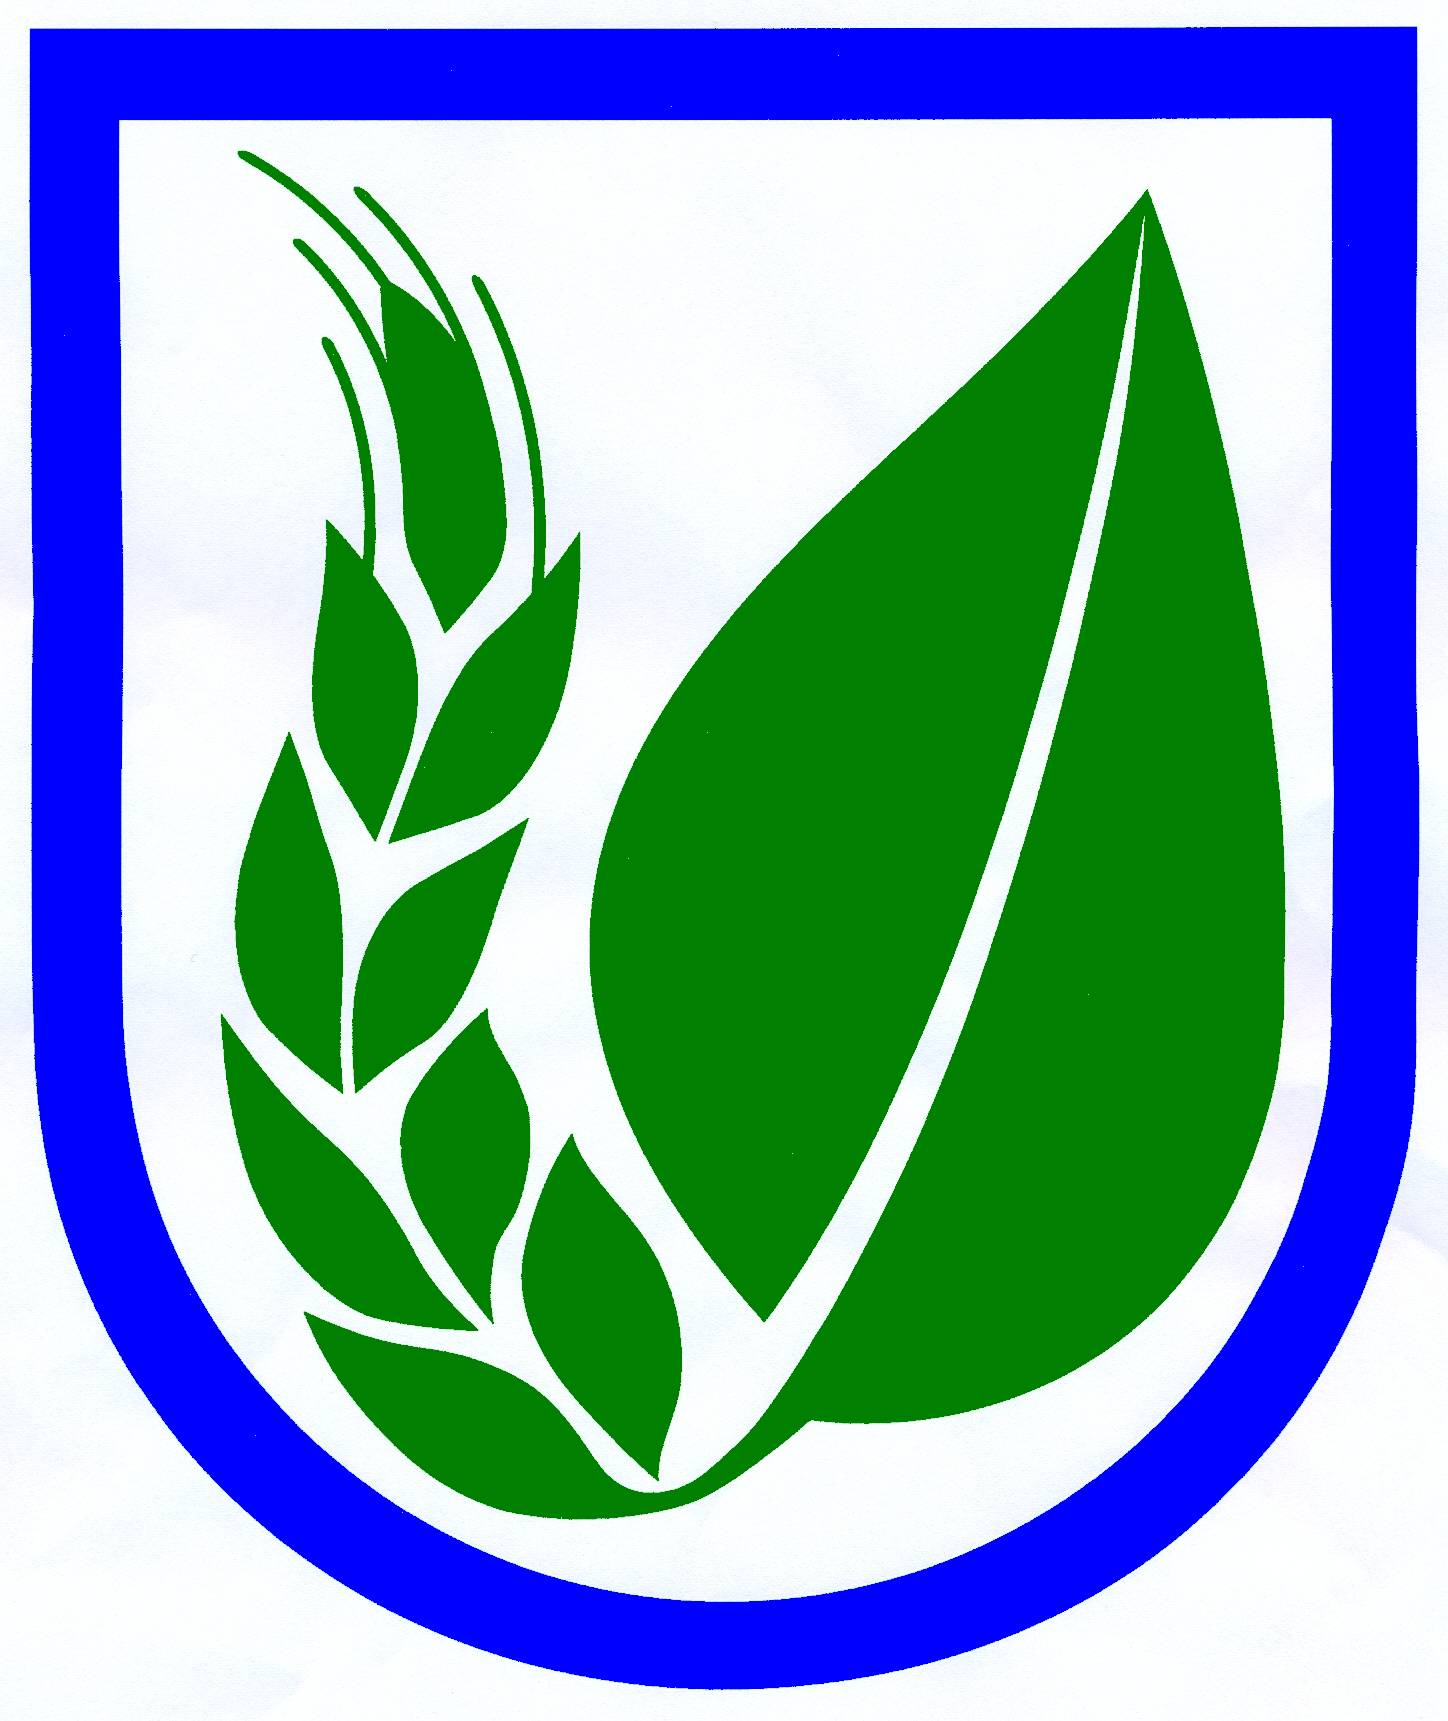 Wappen Gemeinde Elmenhorst, Kreis Herzogtum Lauenburg